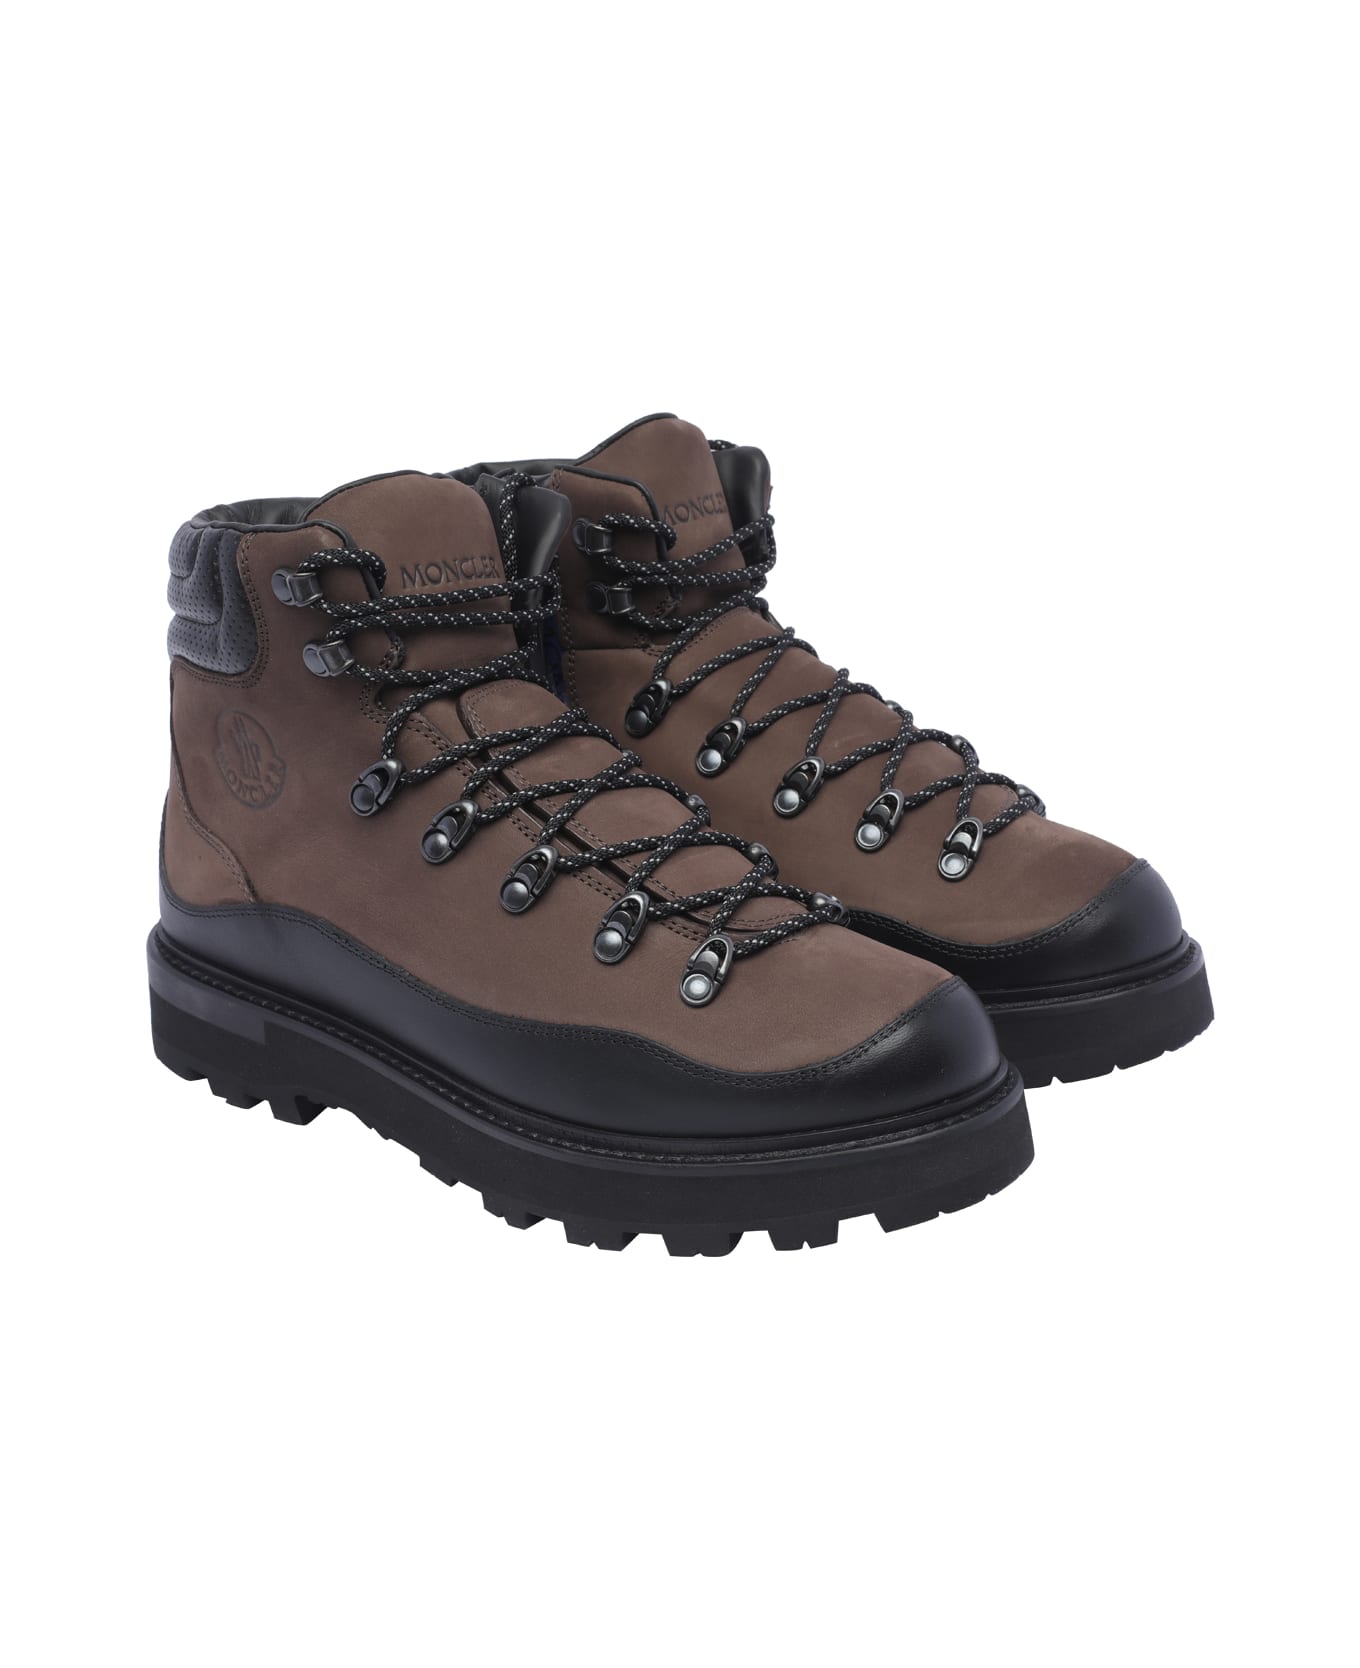 Moncler Peka Trek Hiking Boots - Brown ブーツ